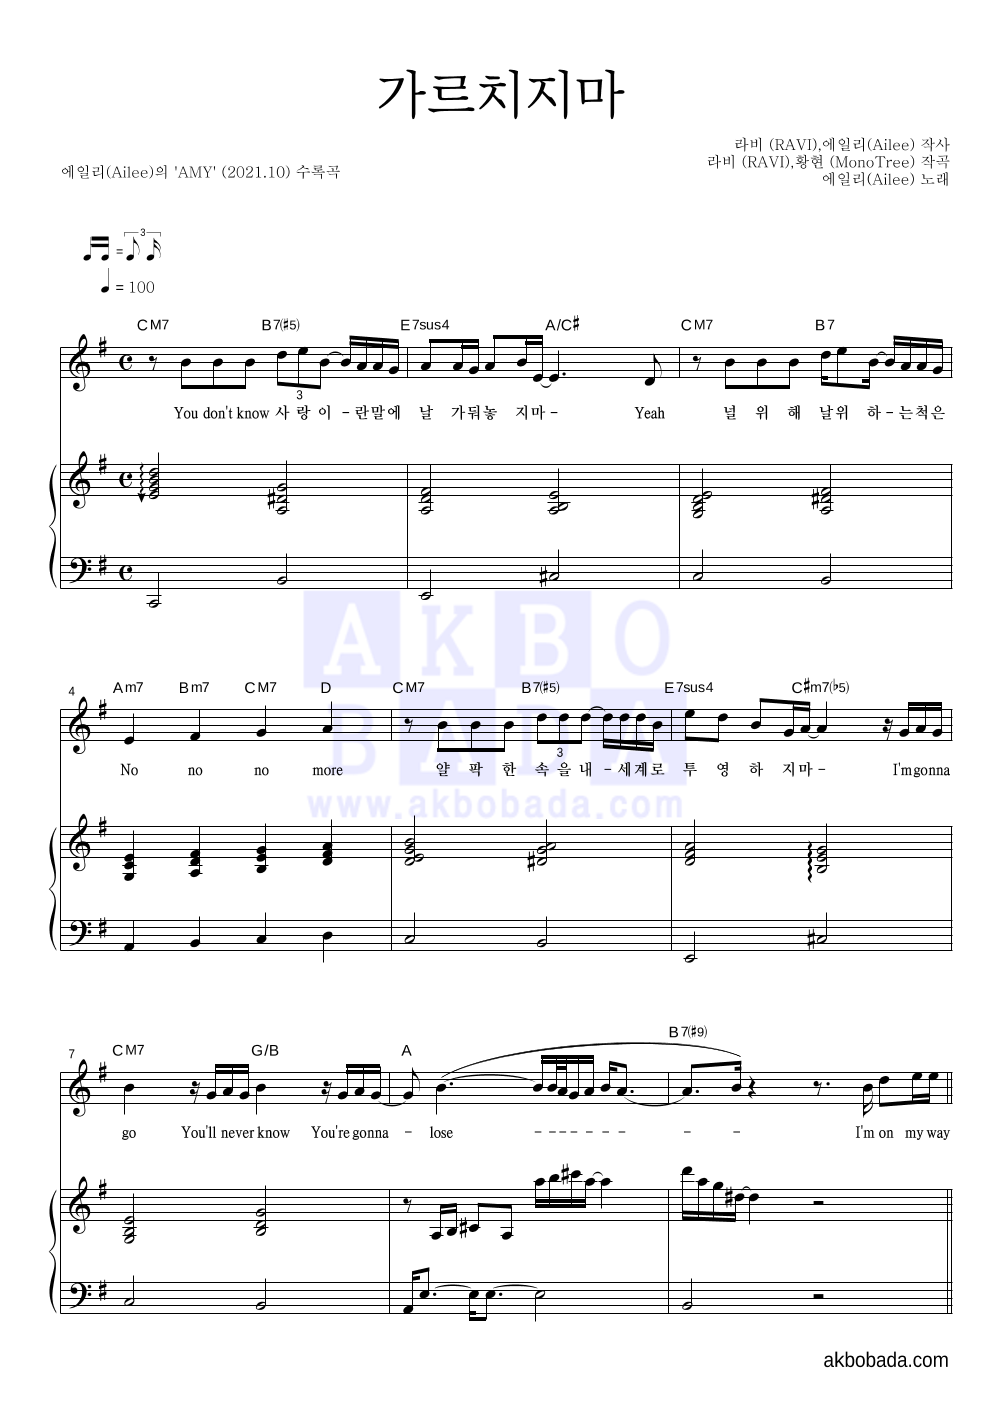 에일리 - 가르치지마 피아노 3단 악보 